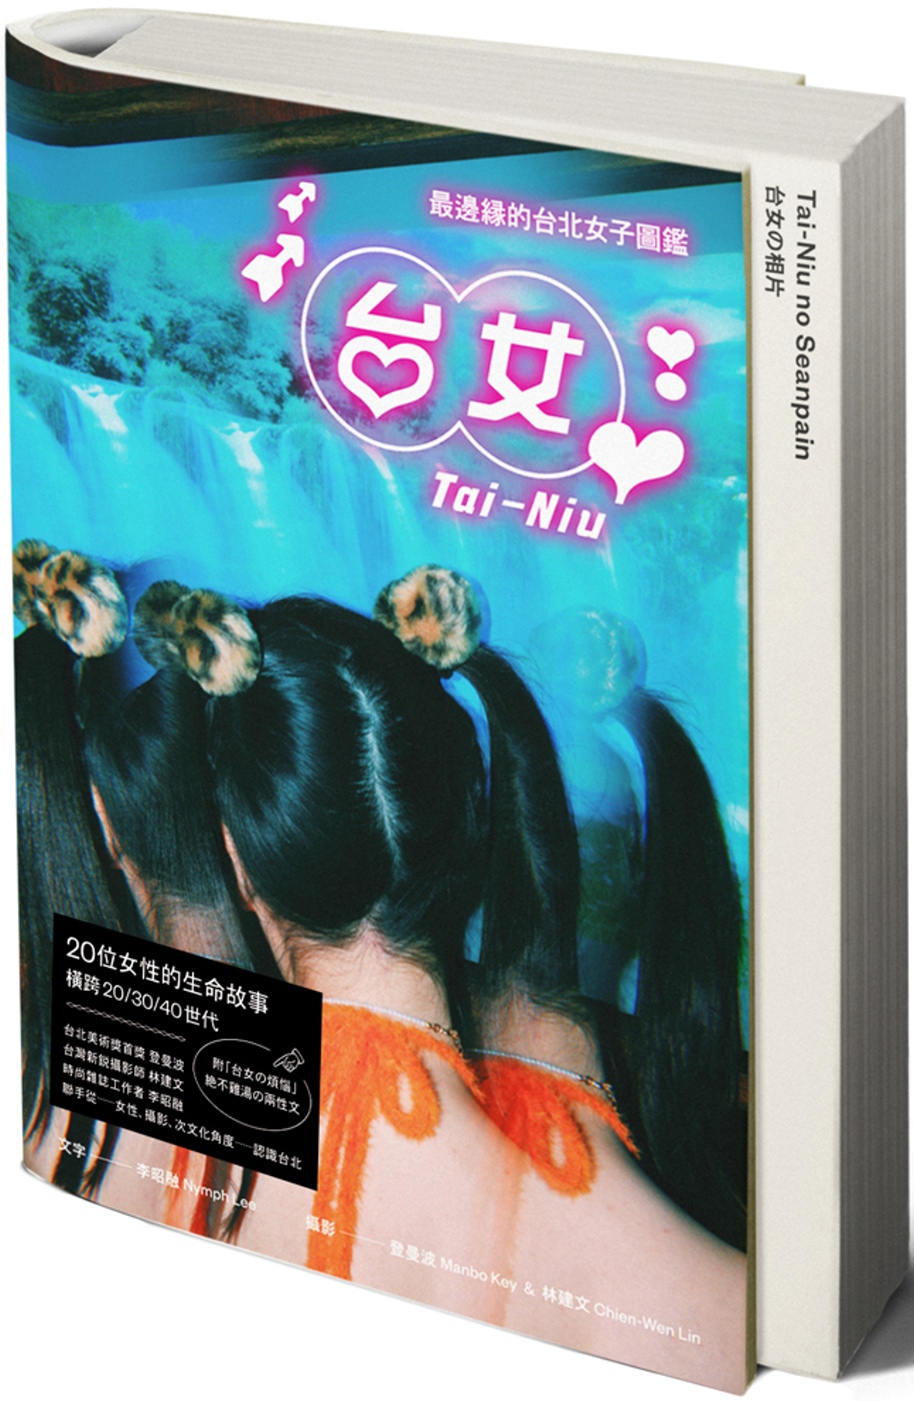 台女Tai-Niu【寫真＋散文 豪華雙冊珍藏版】：最邊緣的台北女子圖鑑